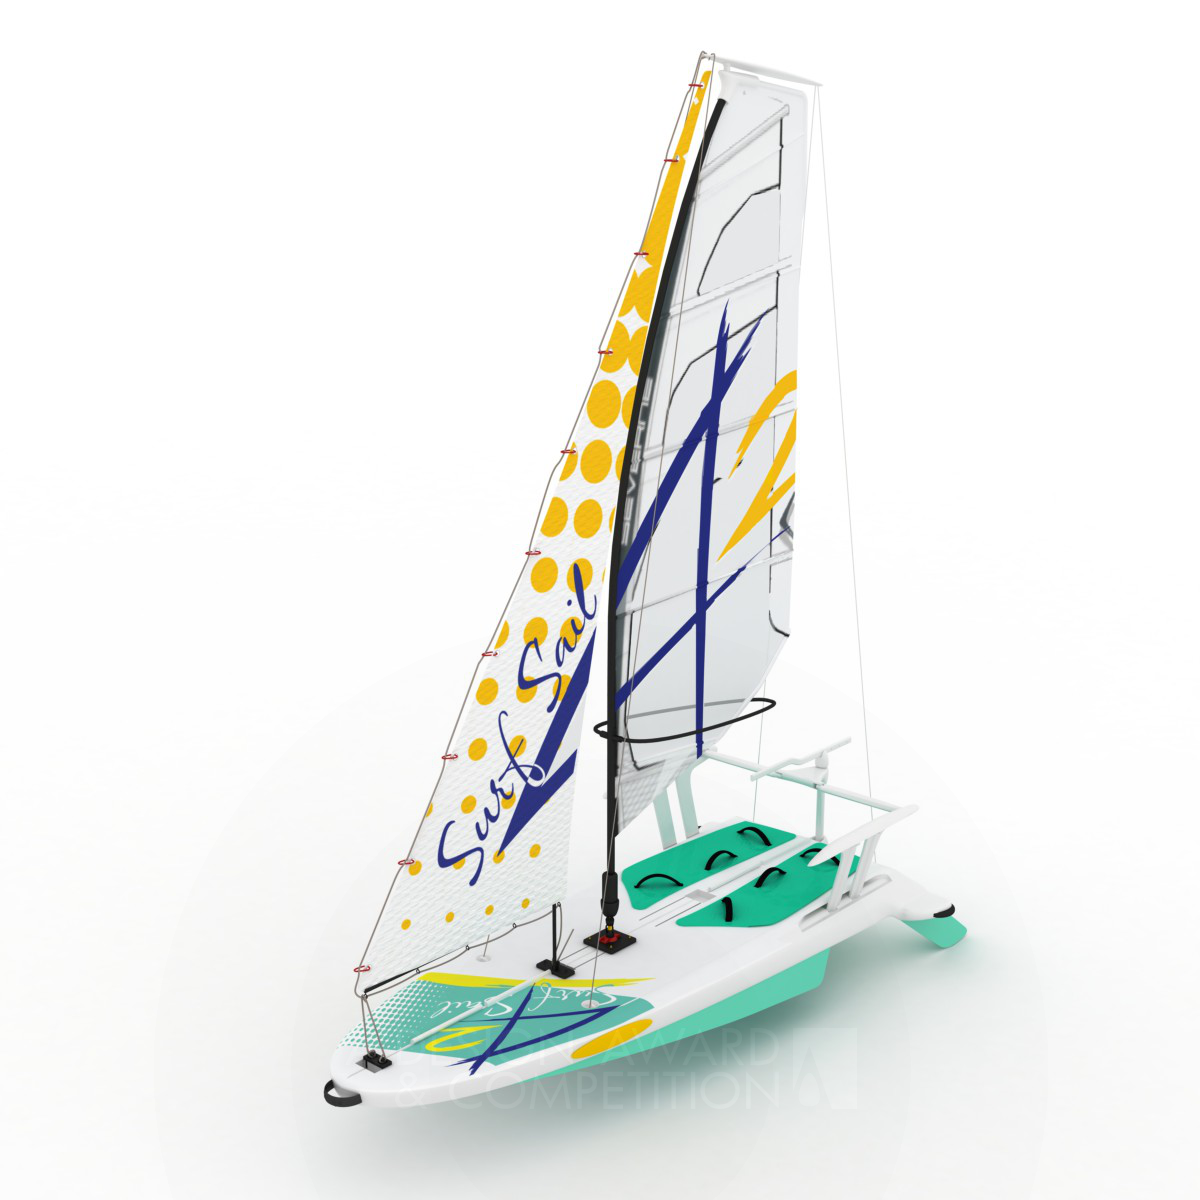 SurfSail42 Sailboard for windsurfing and sailing by Hakan Gürsu